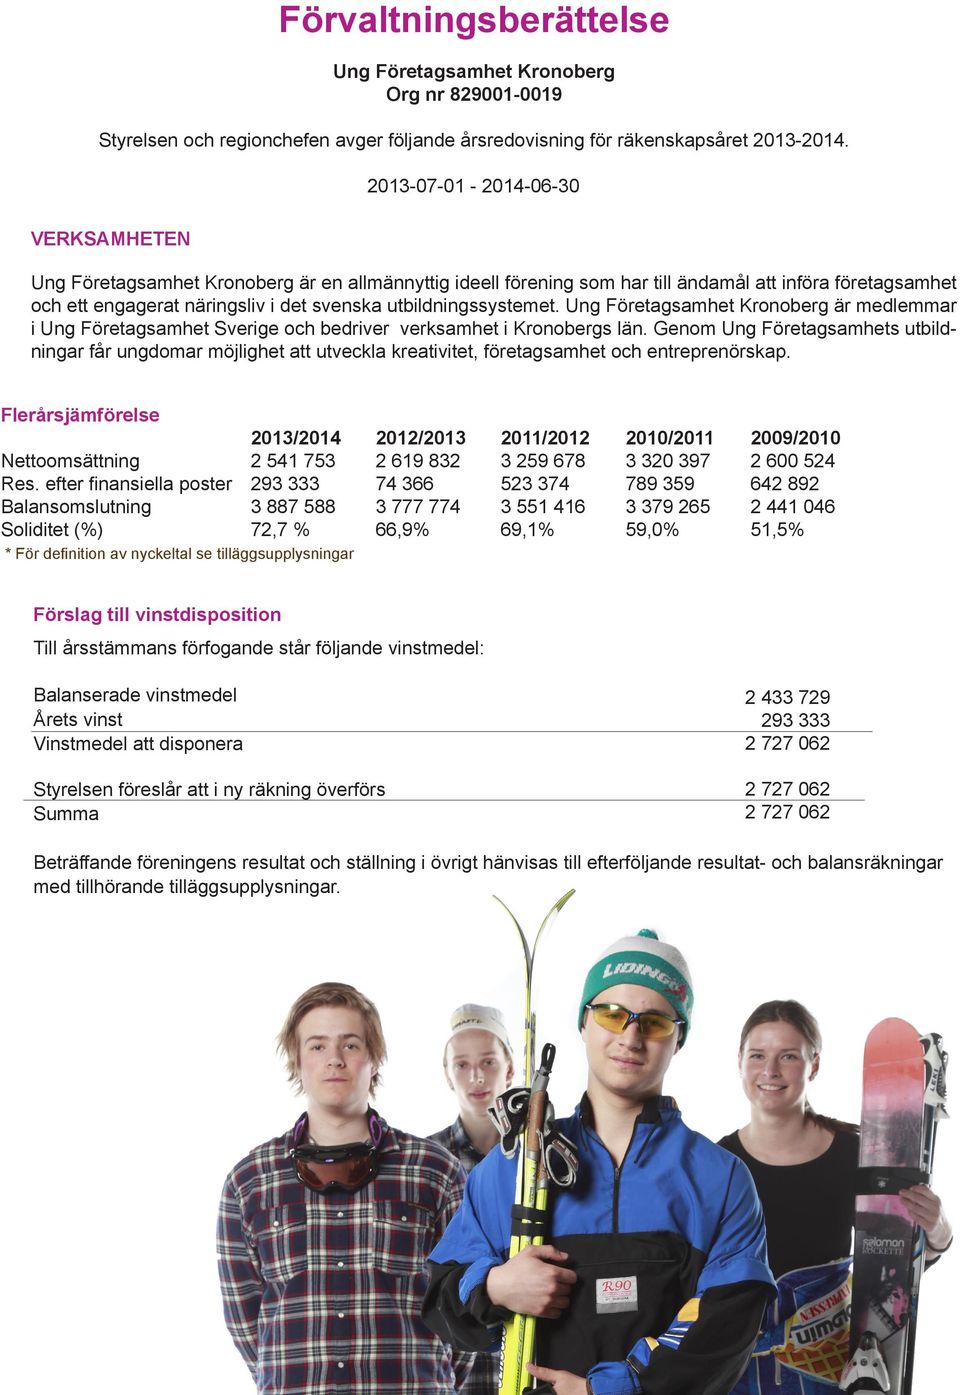 utbildningssystemet. Ung Företagsamhet Kronoberg är medlemmar i Ung Företagsamhet Sverige och bedriver verksamhet i Kronobergs län.